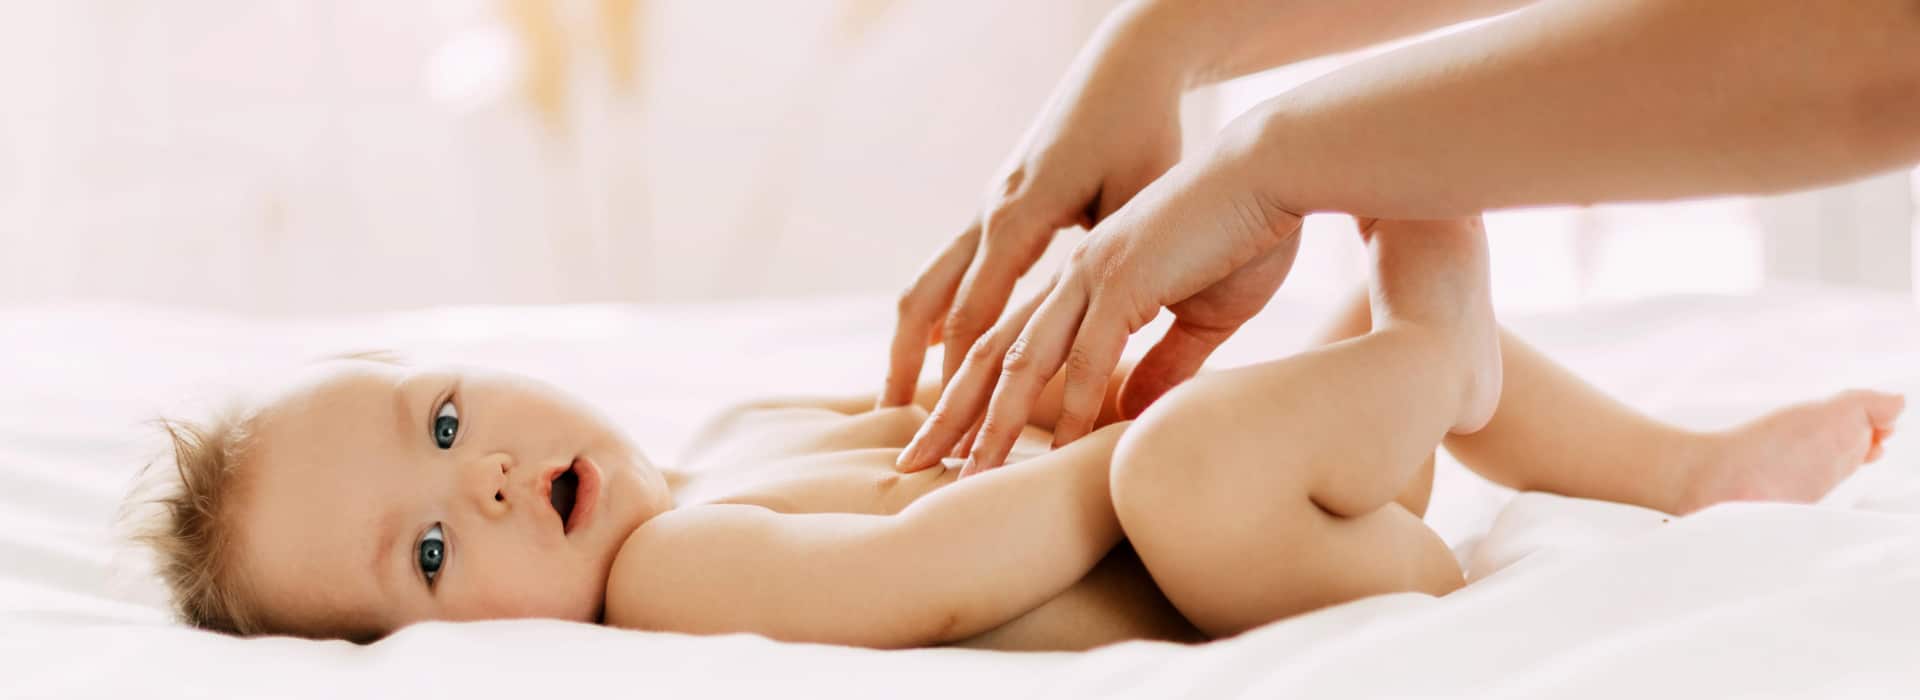 In salute - massaggio neonatale